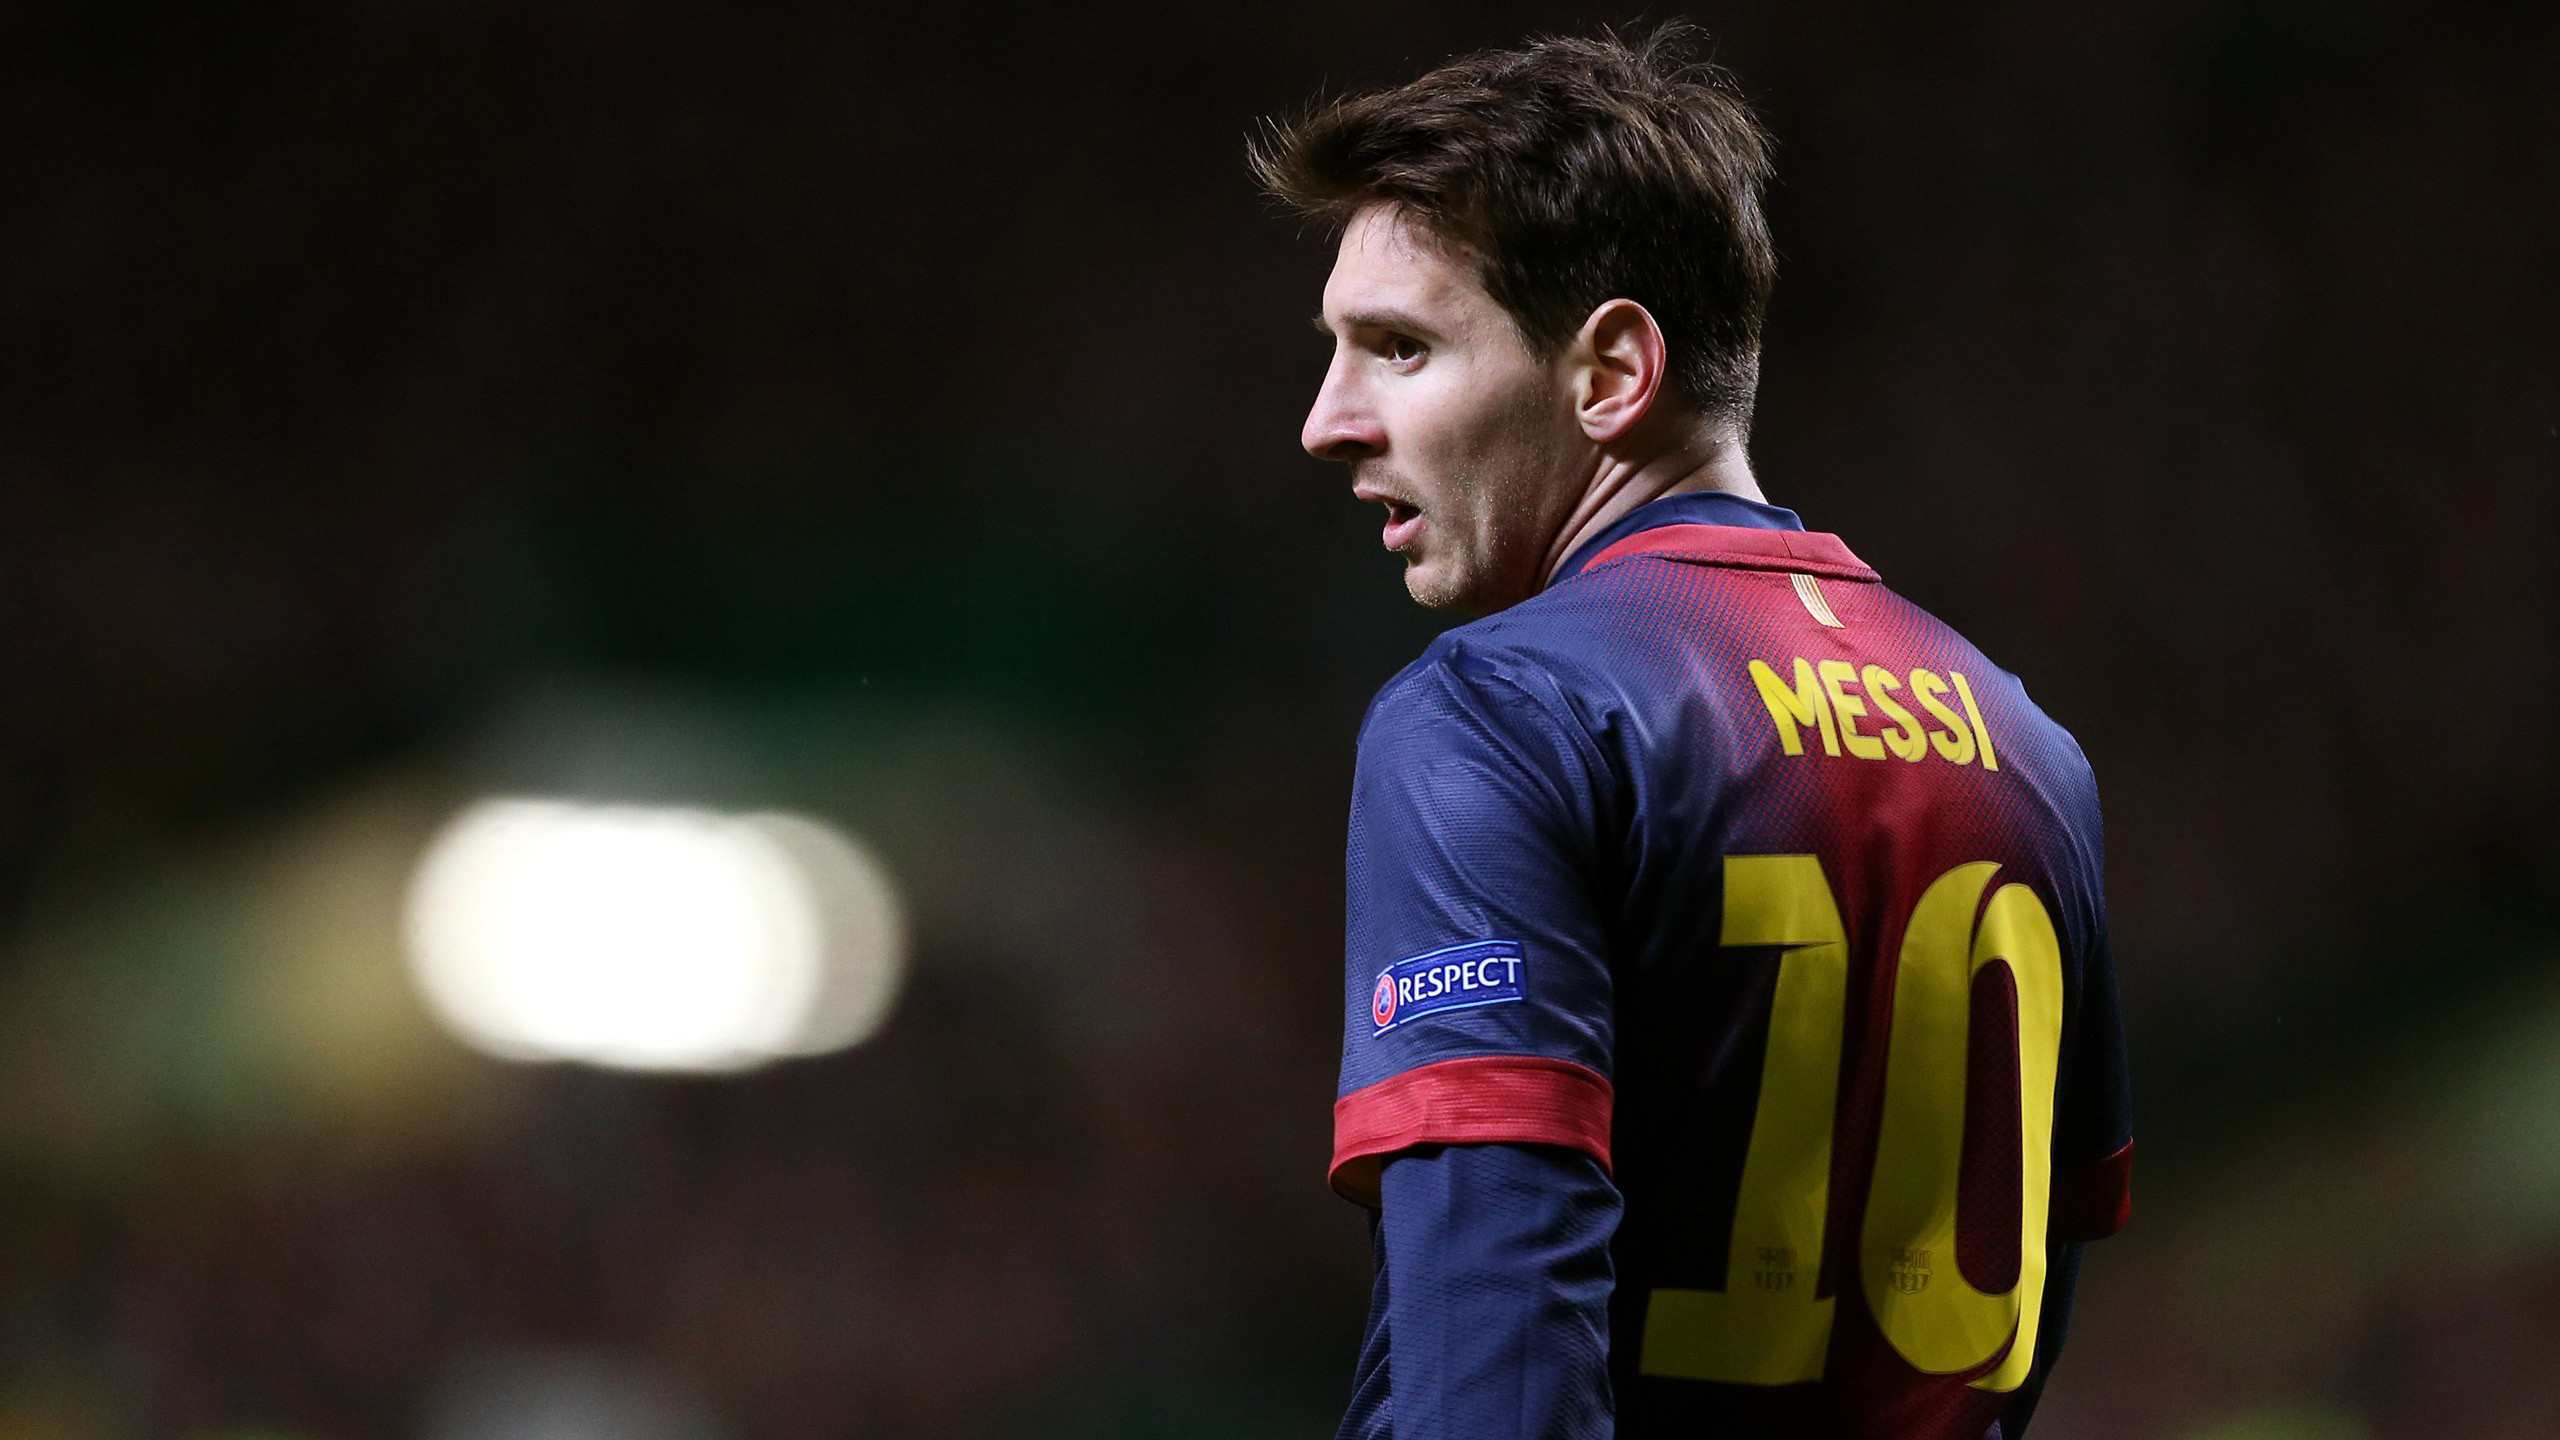 2560x1440 Sports / Lionel Messi Wallpaper. Lionel Messi, FC Barcelona, HD